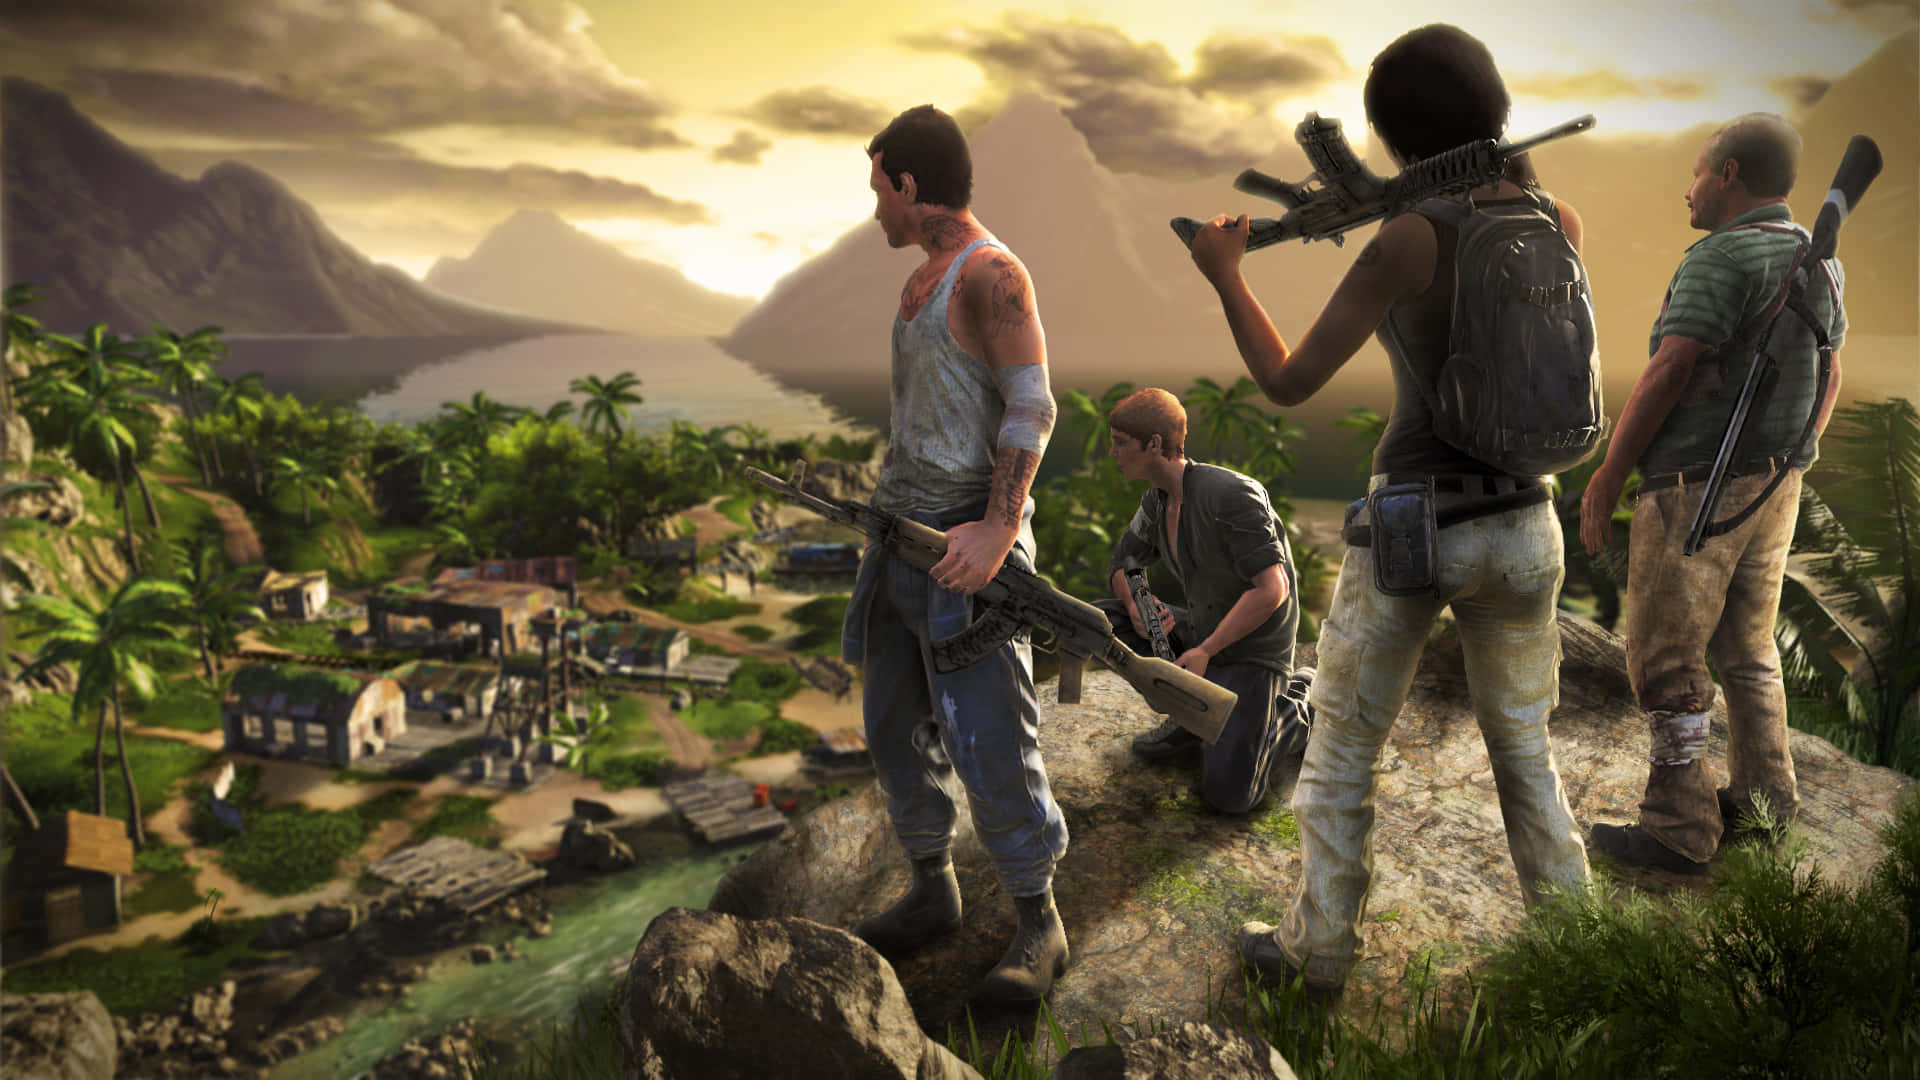 Überlistensie Ihre Feinde In Einer Atemberaubenden Tropischen Welt Mit Far Cry 3